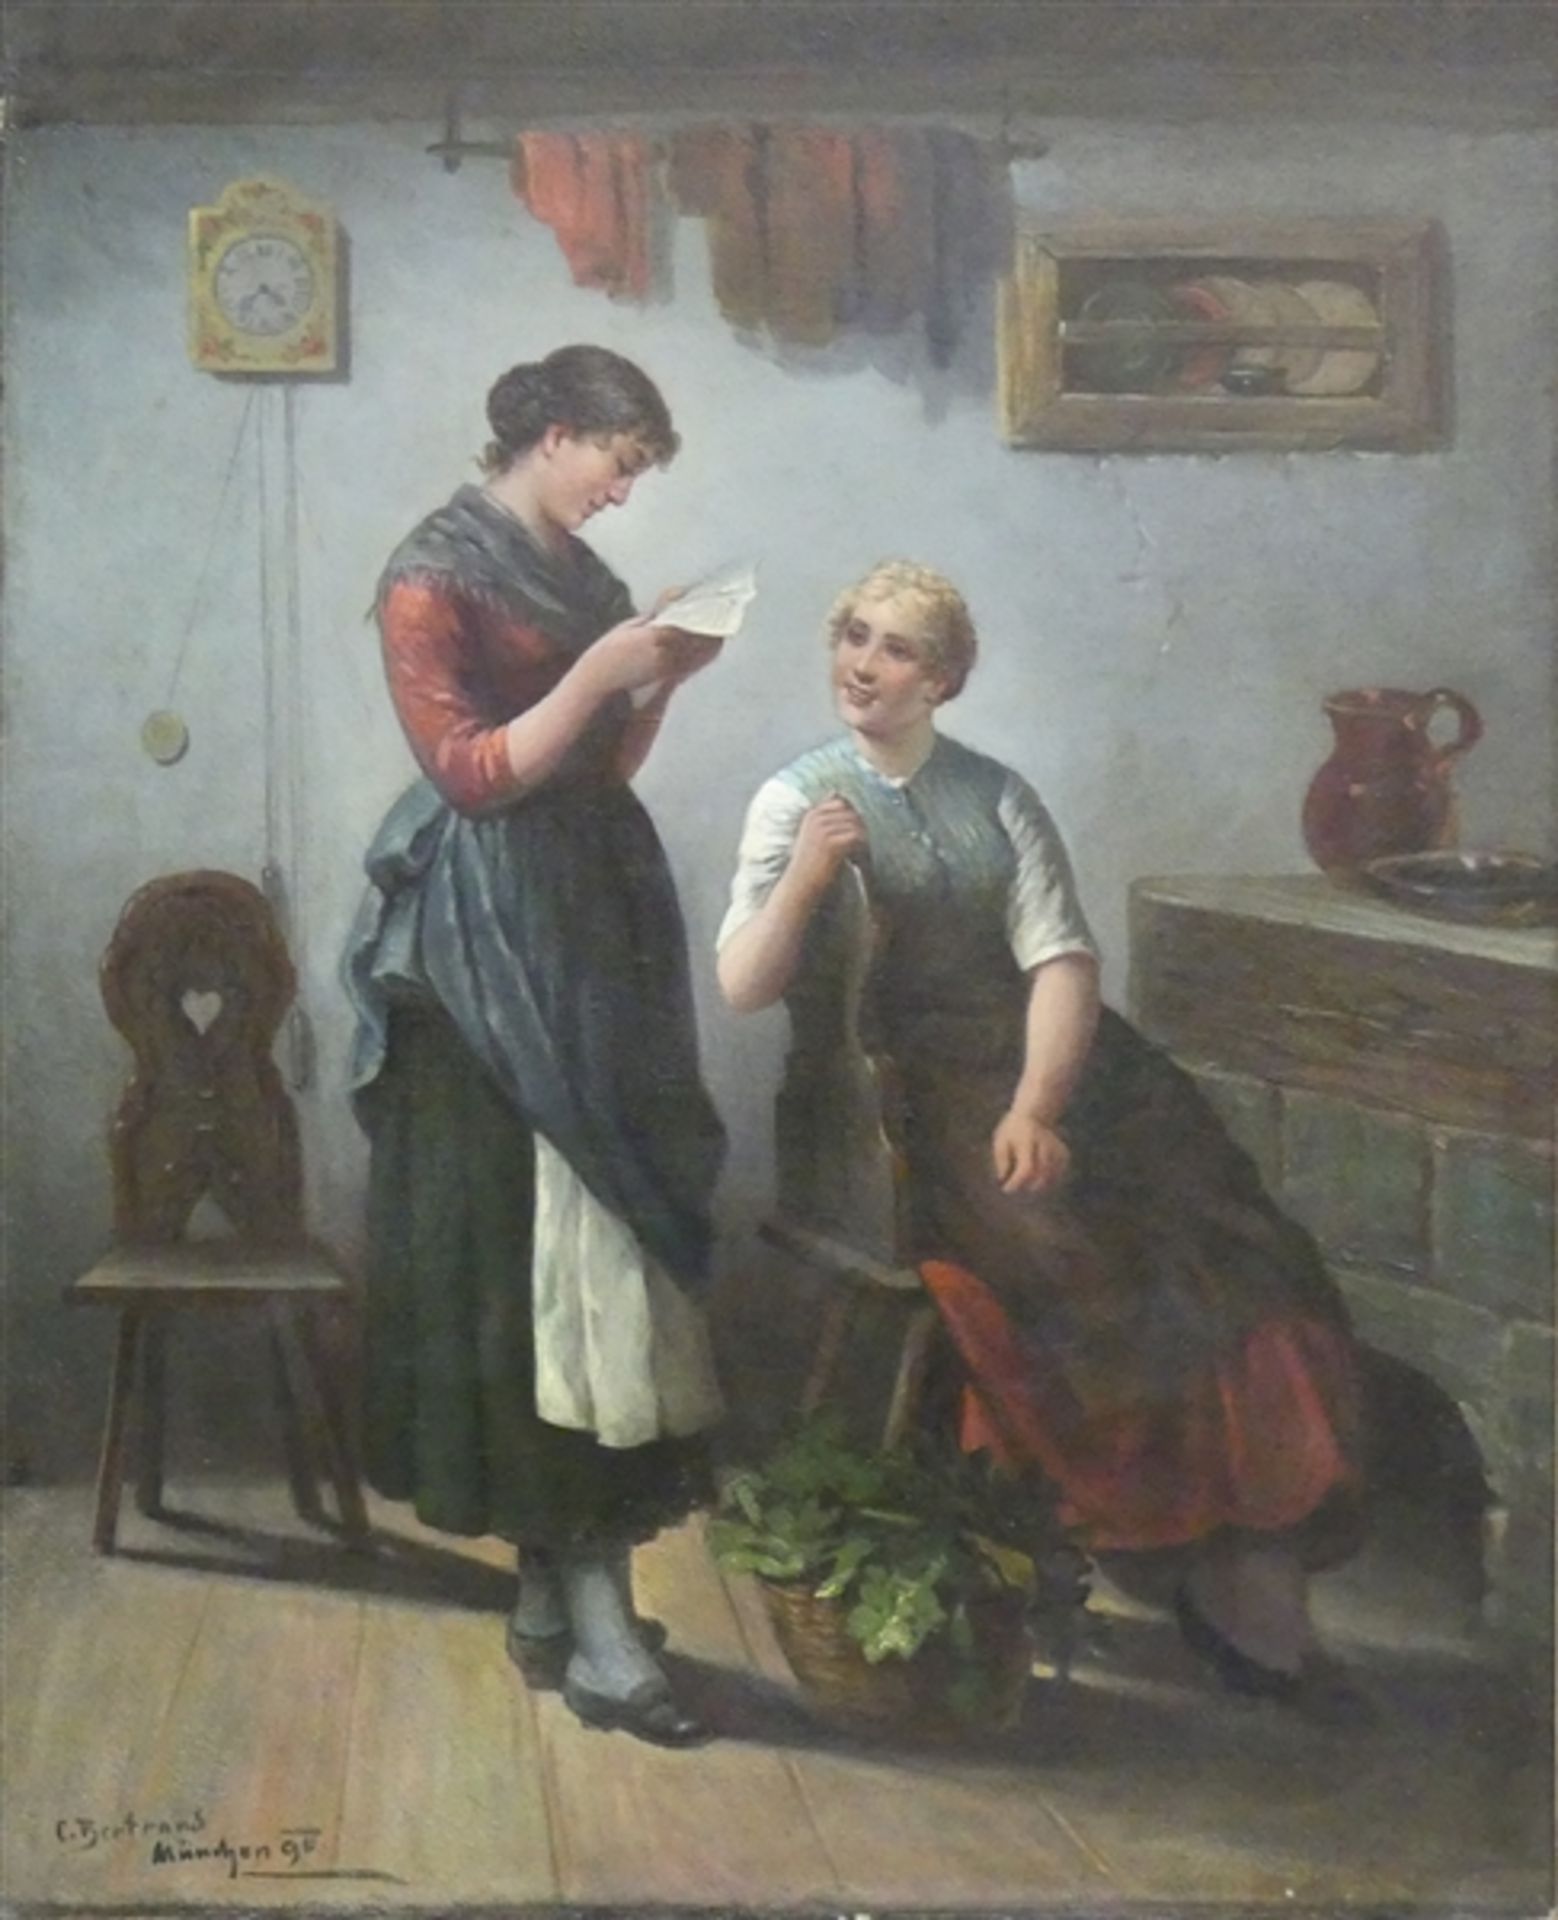 Bertrand, C. Münchner Genremaler, 19. Jh., Öl auf Leinen, Zwei Bäuerinnen in der Küchenstube, beim